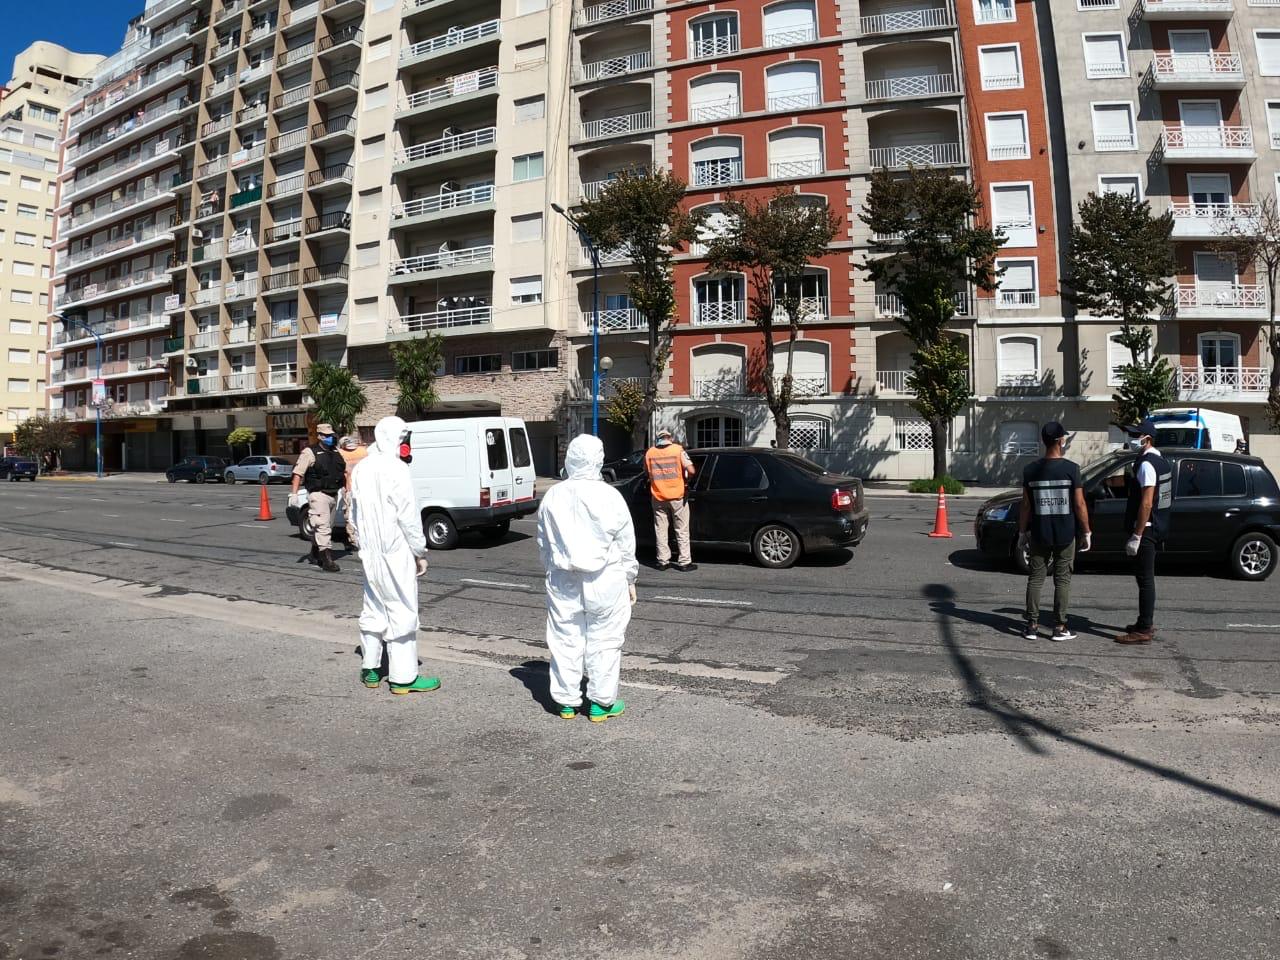 Récord de contagios en Mar del Plata: La ciudad estaba esperanzada con pasar de fase pero tuvo 5 casos de coronavirus en un día